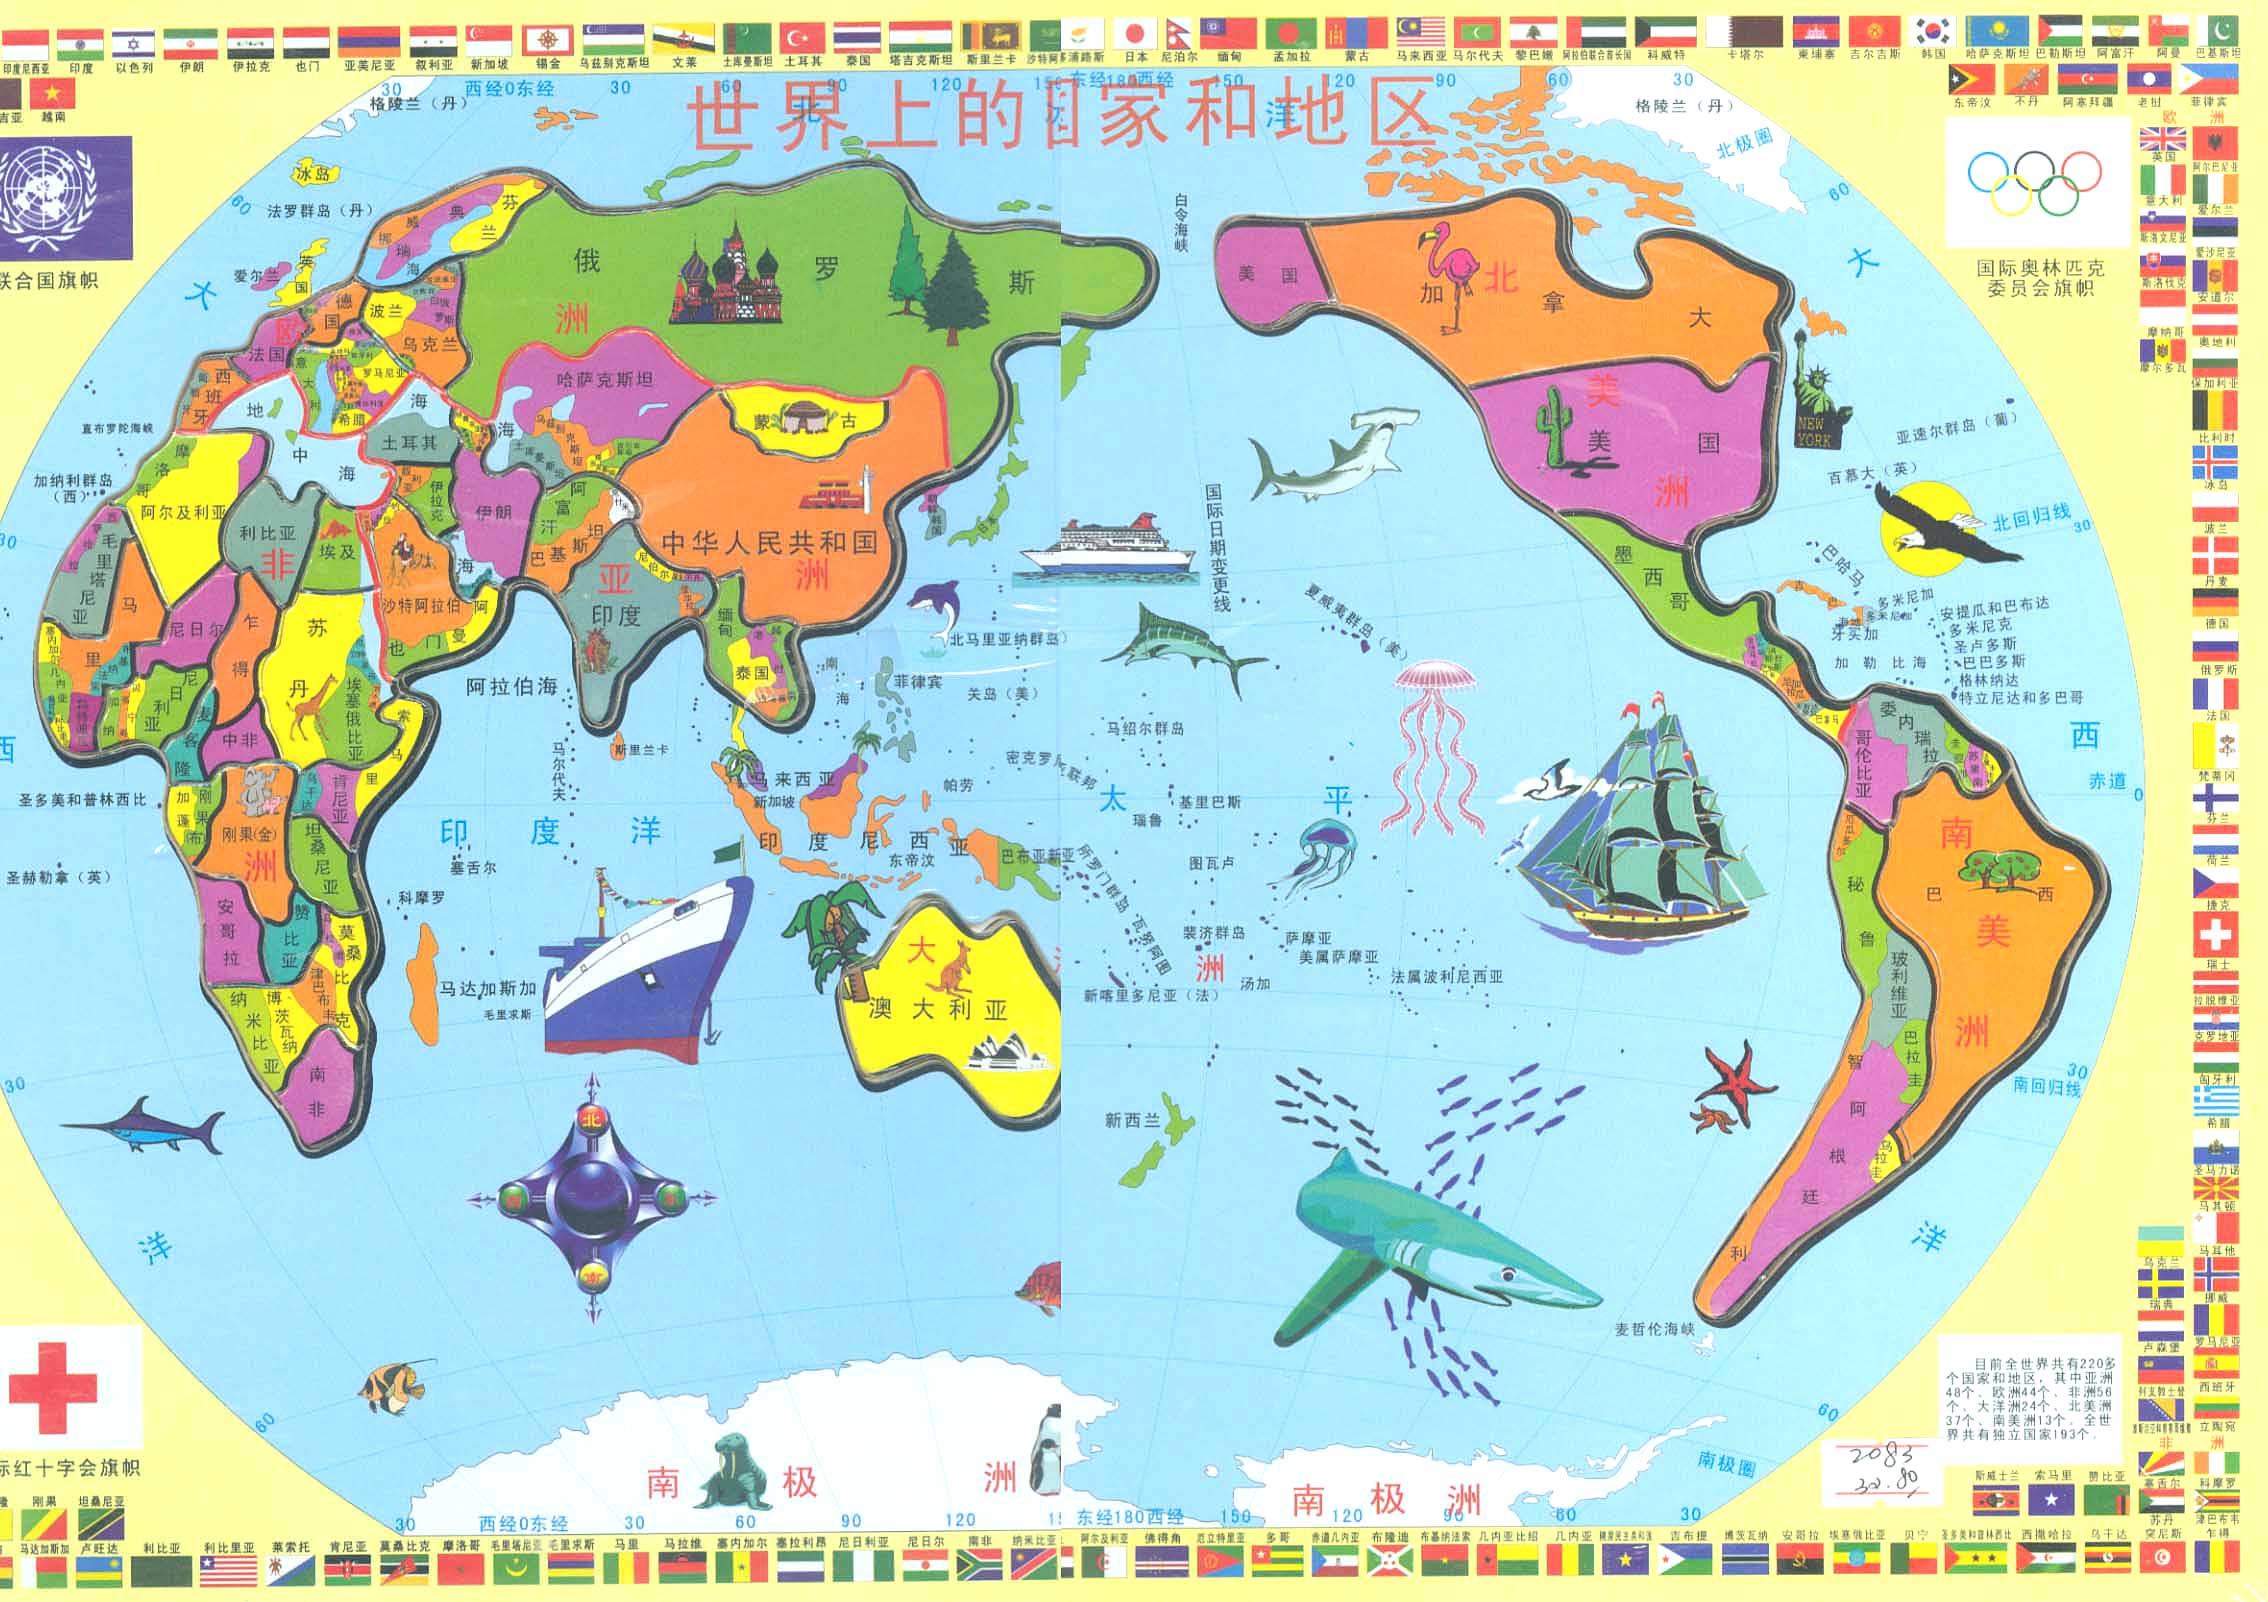 下面是2014年最新的世界地图(卡通版)